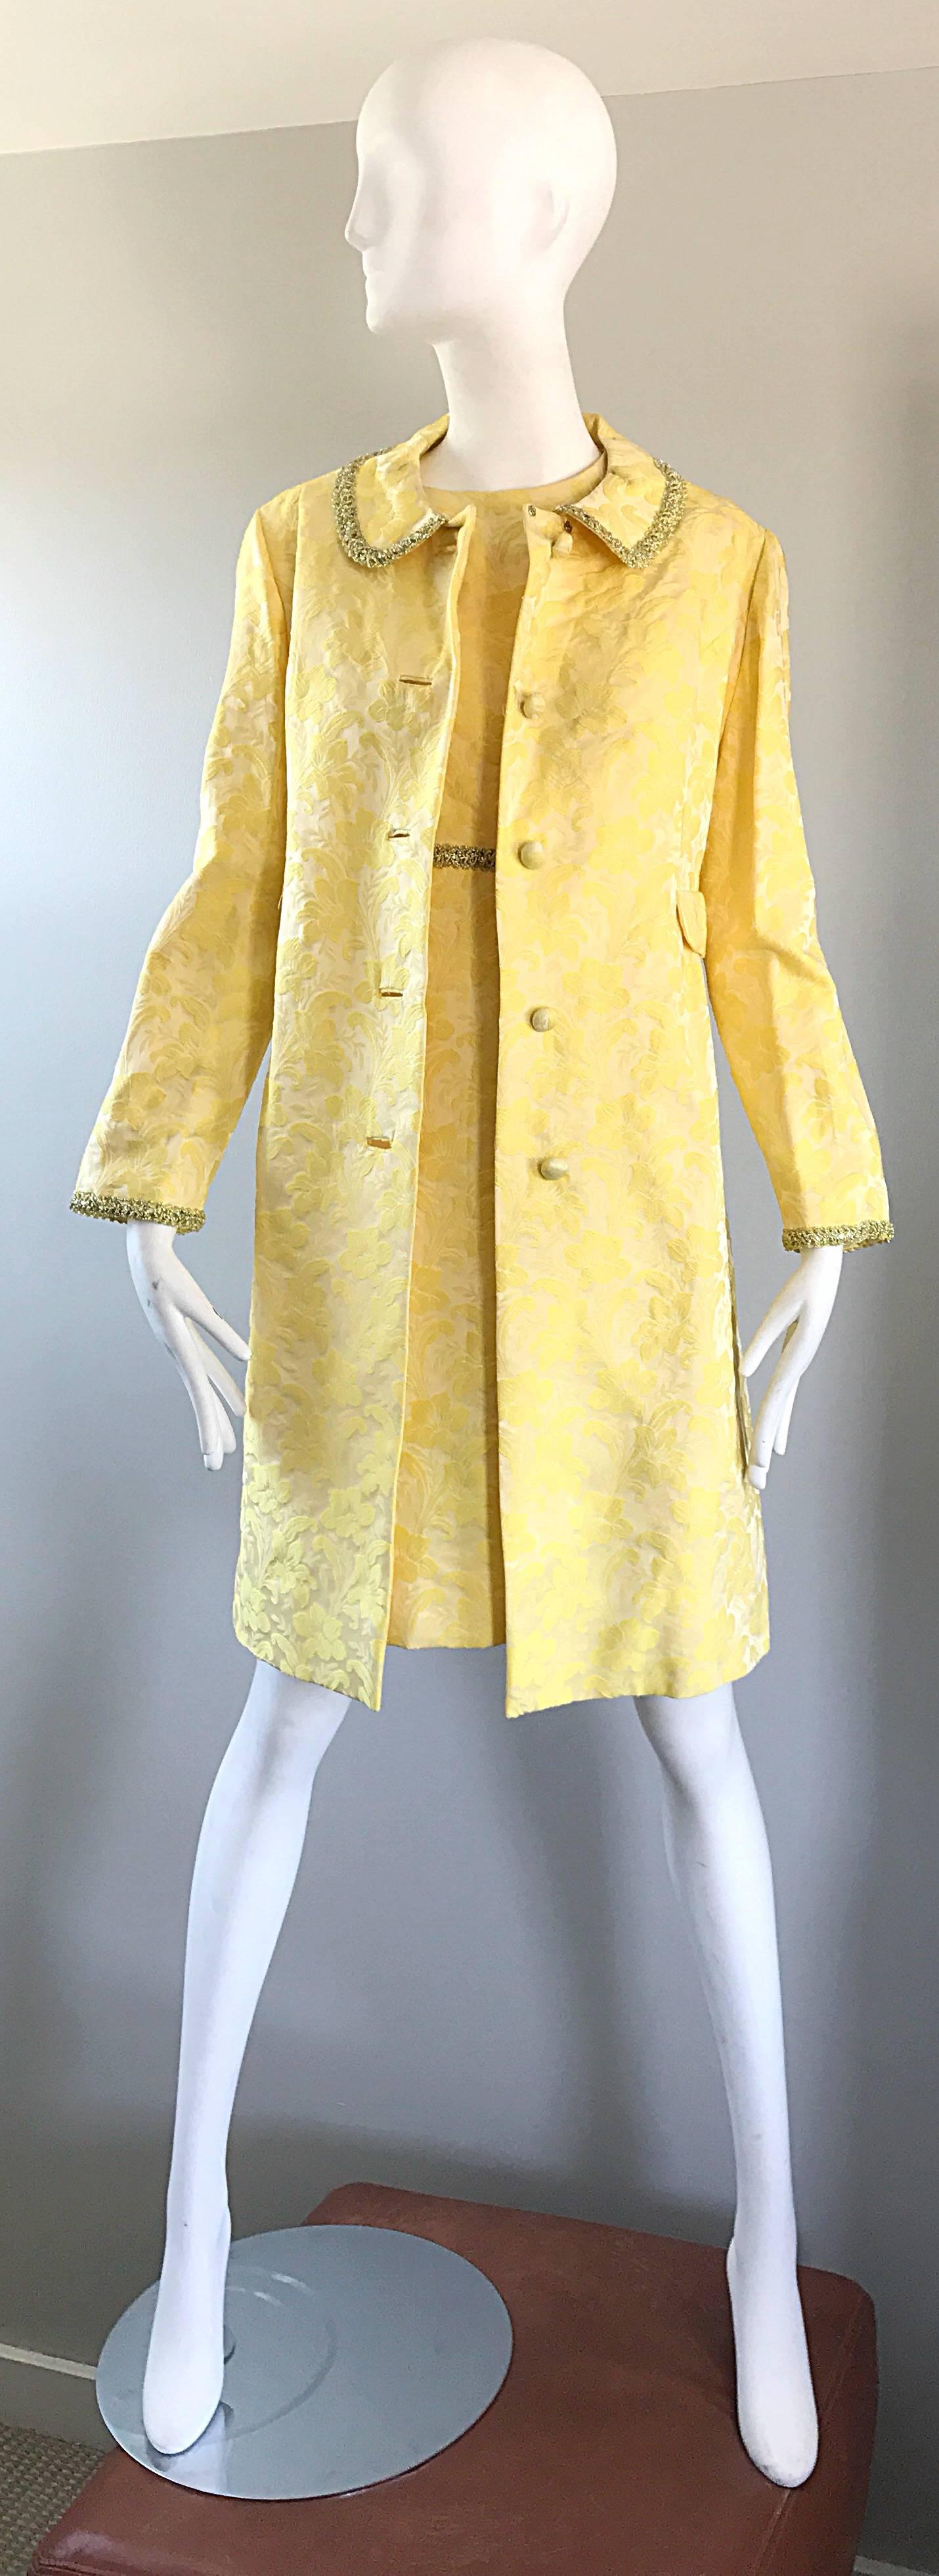 yellow jacket dress